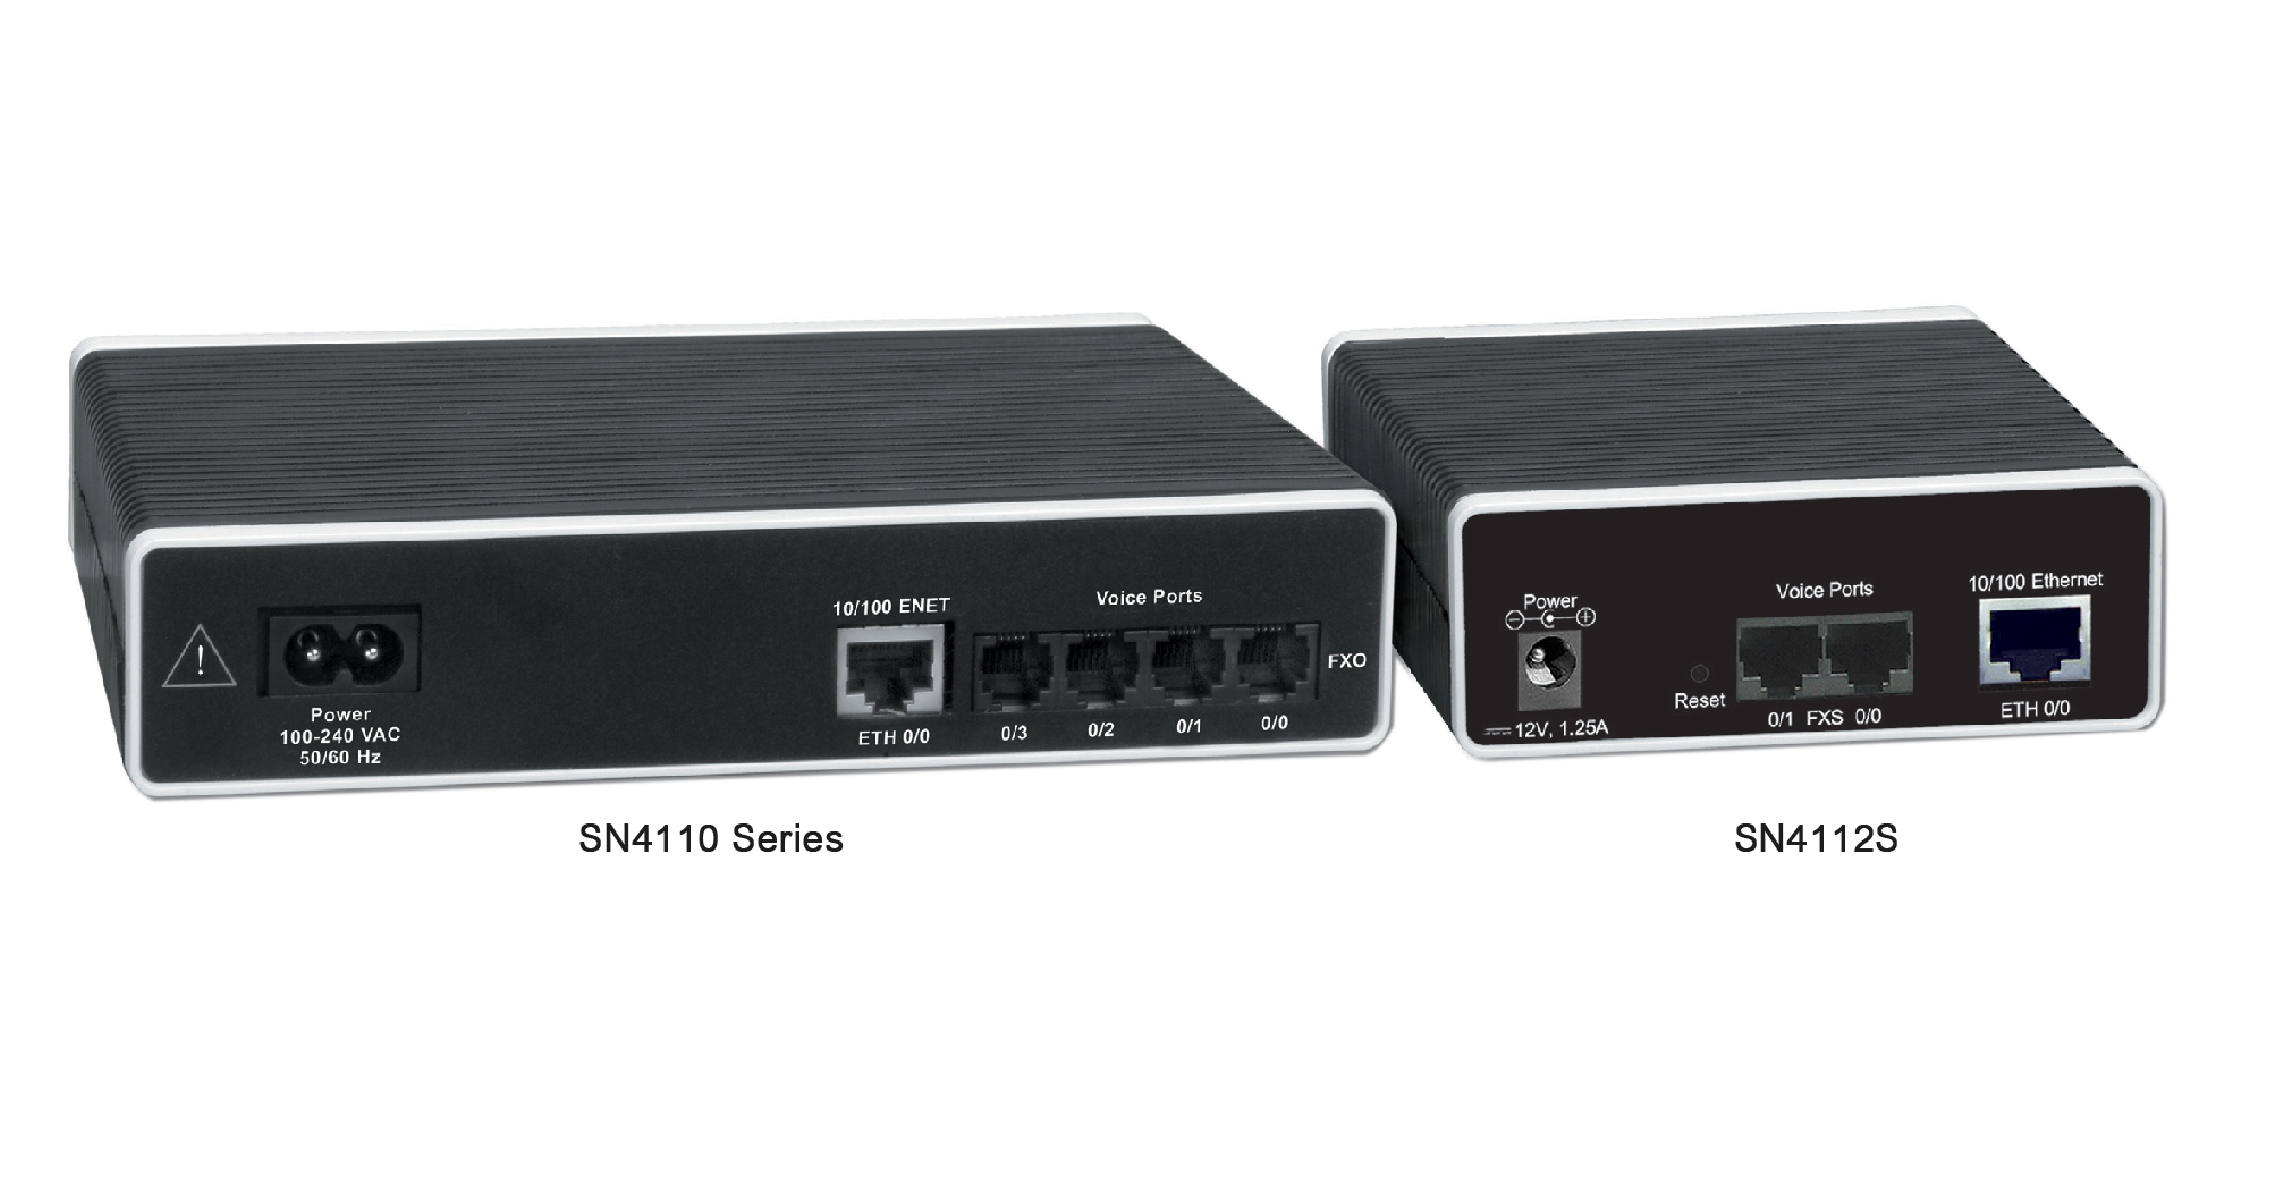 SN4110 Multi-Port FXS/FXO VoIP Gateways